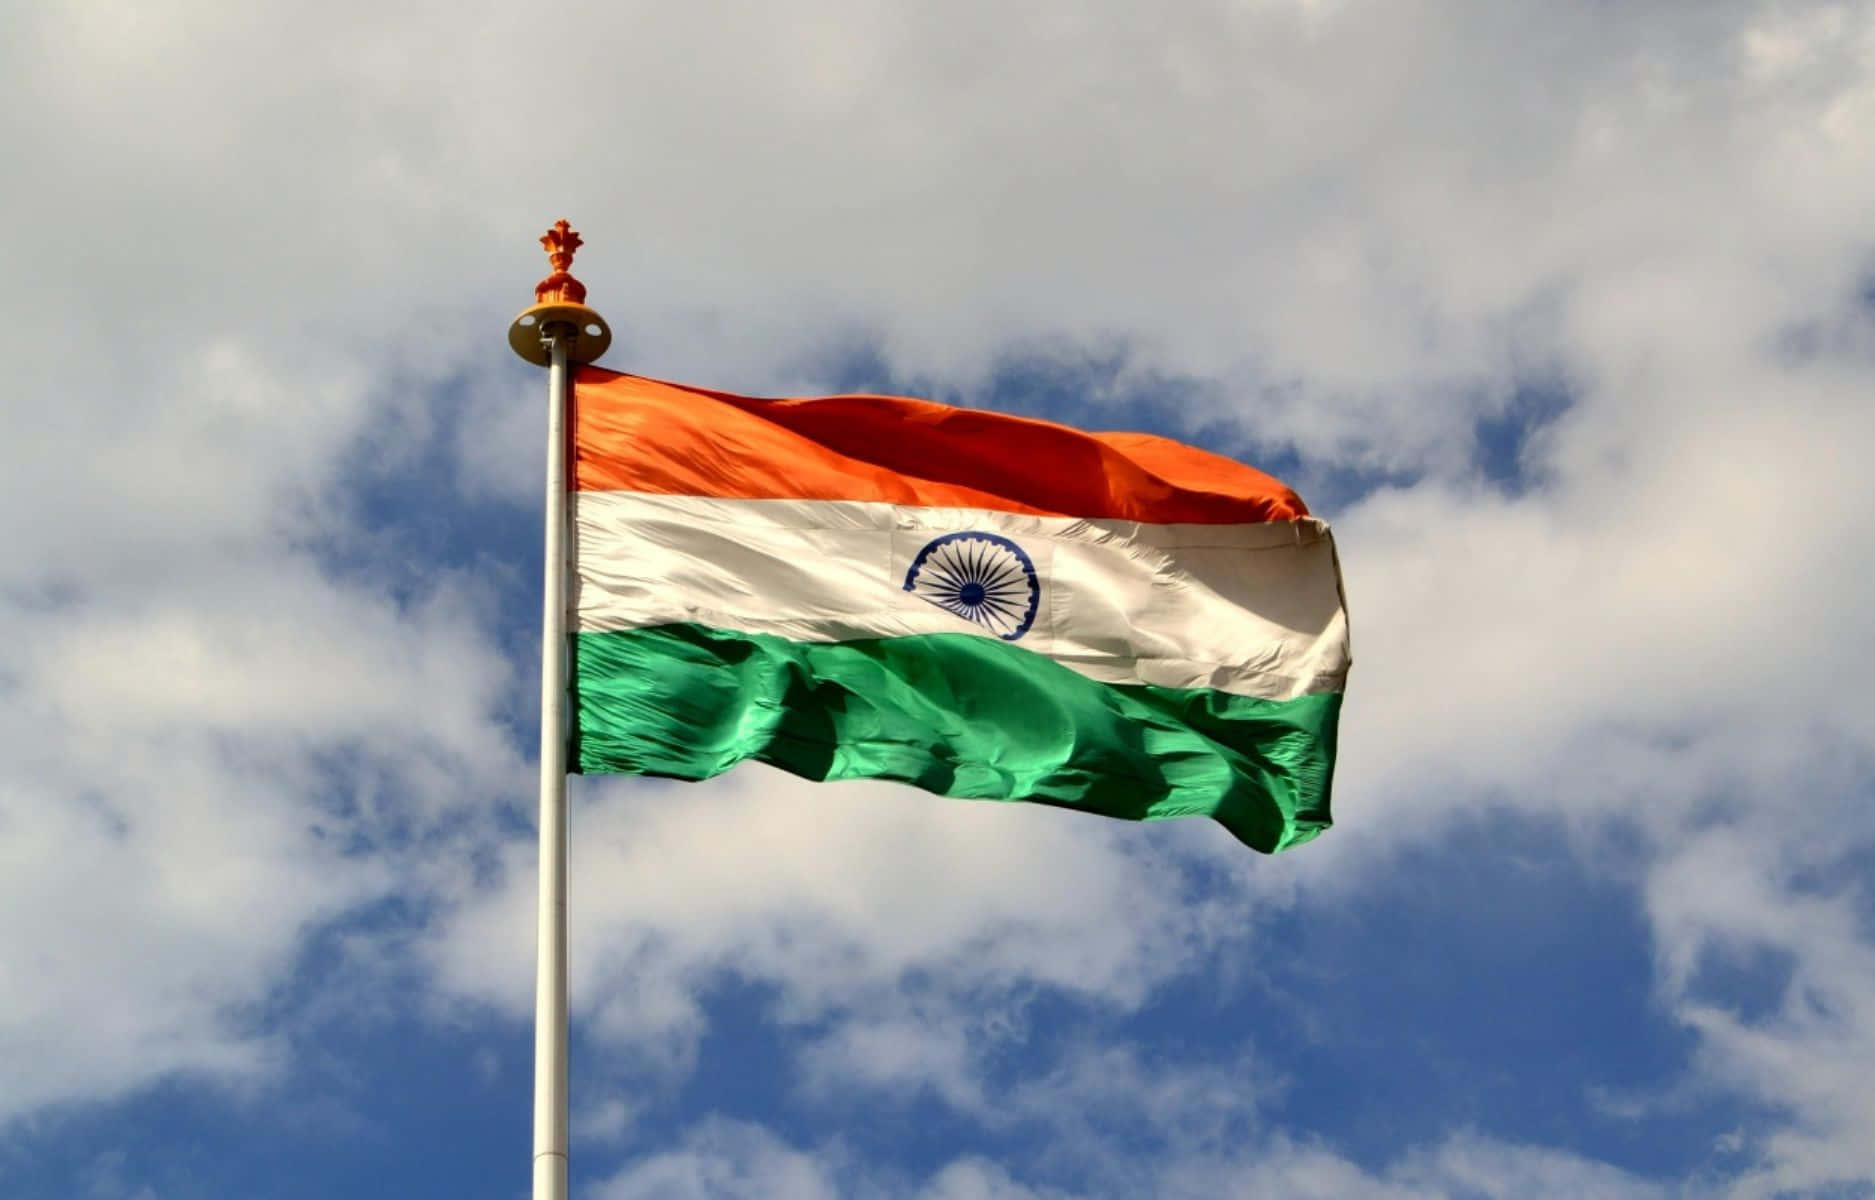 Hilsendedet Indiske Flag, Symbol På National Stolthed.